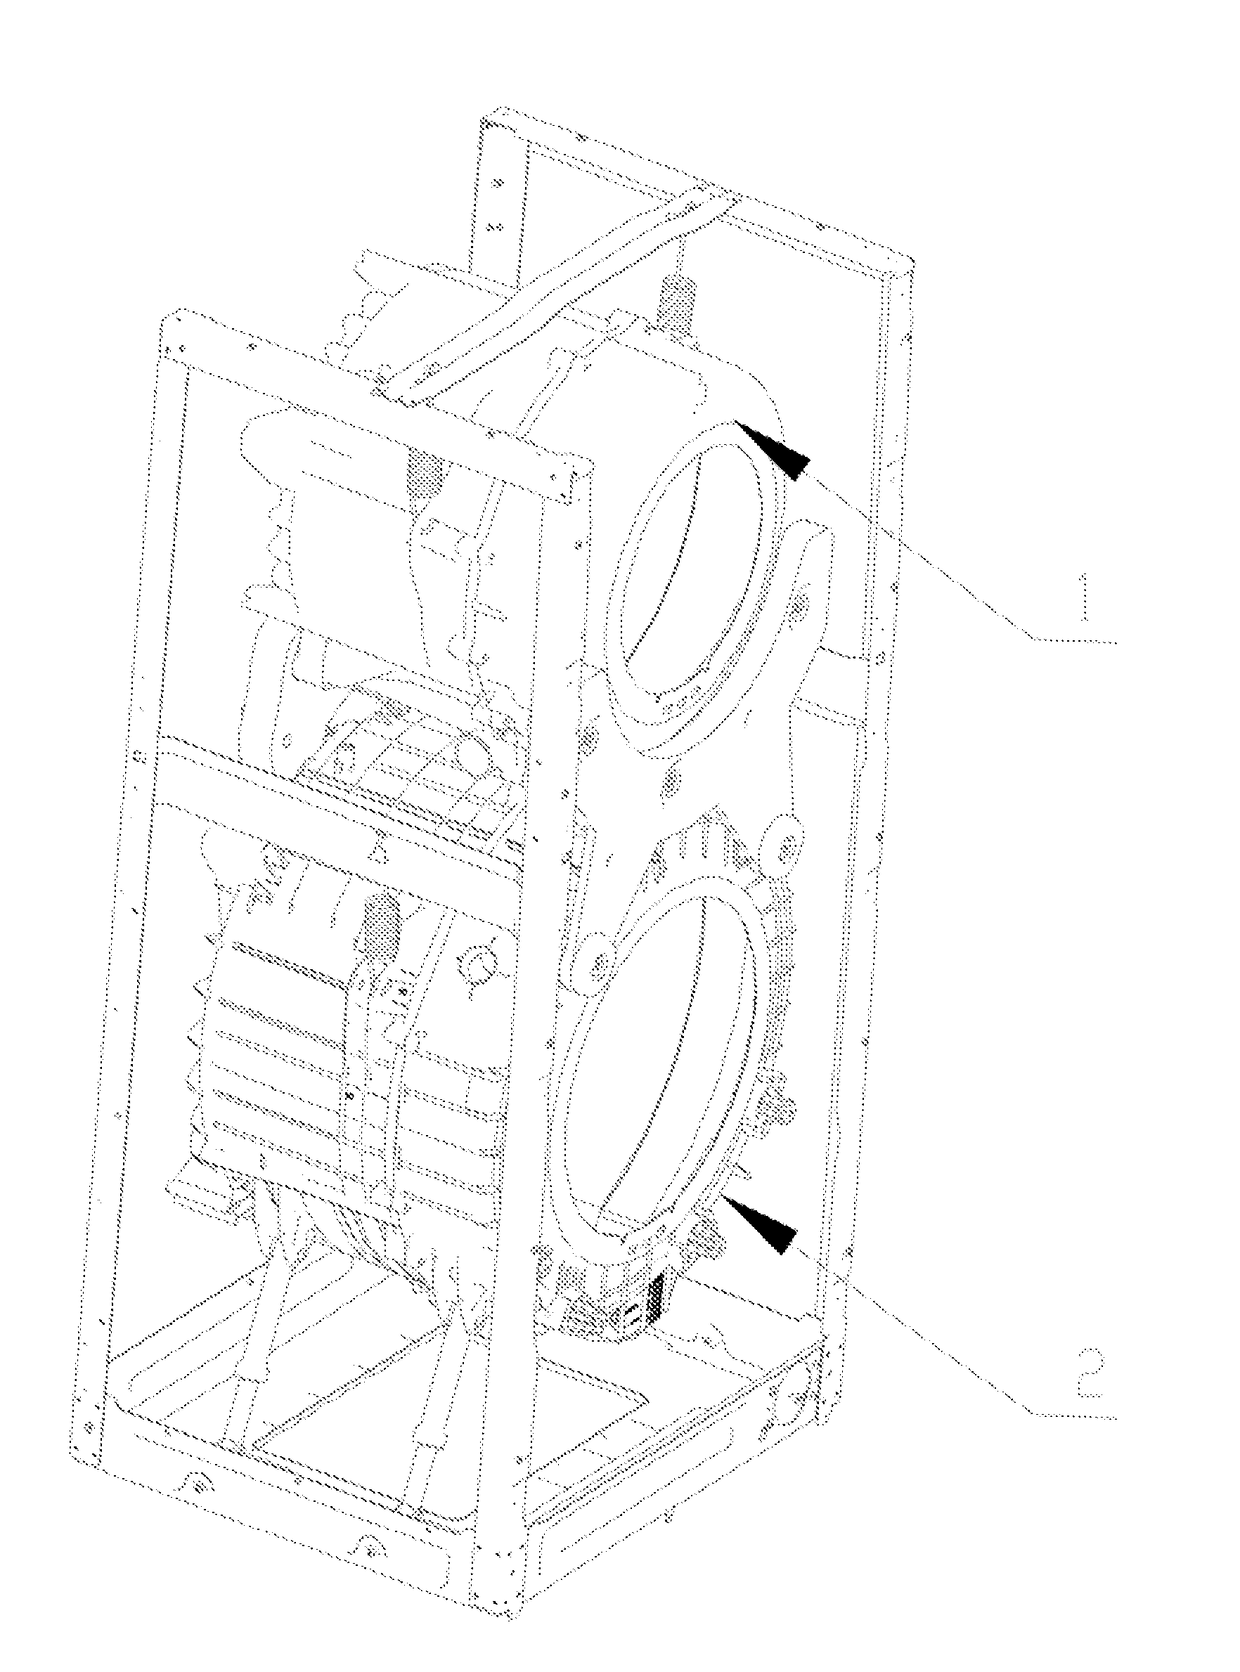 Control method of dual-drum washing machine